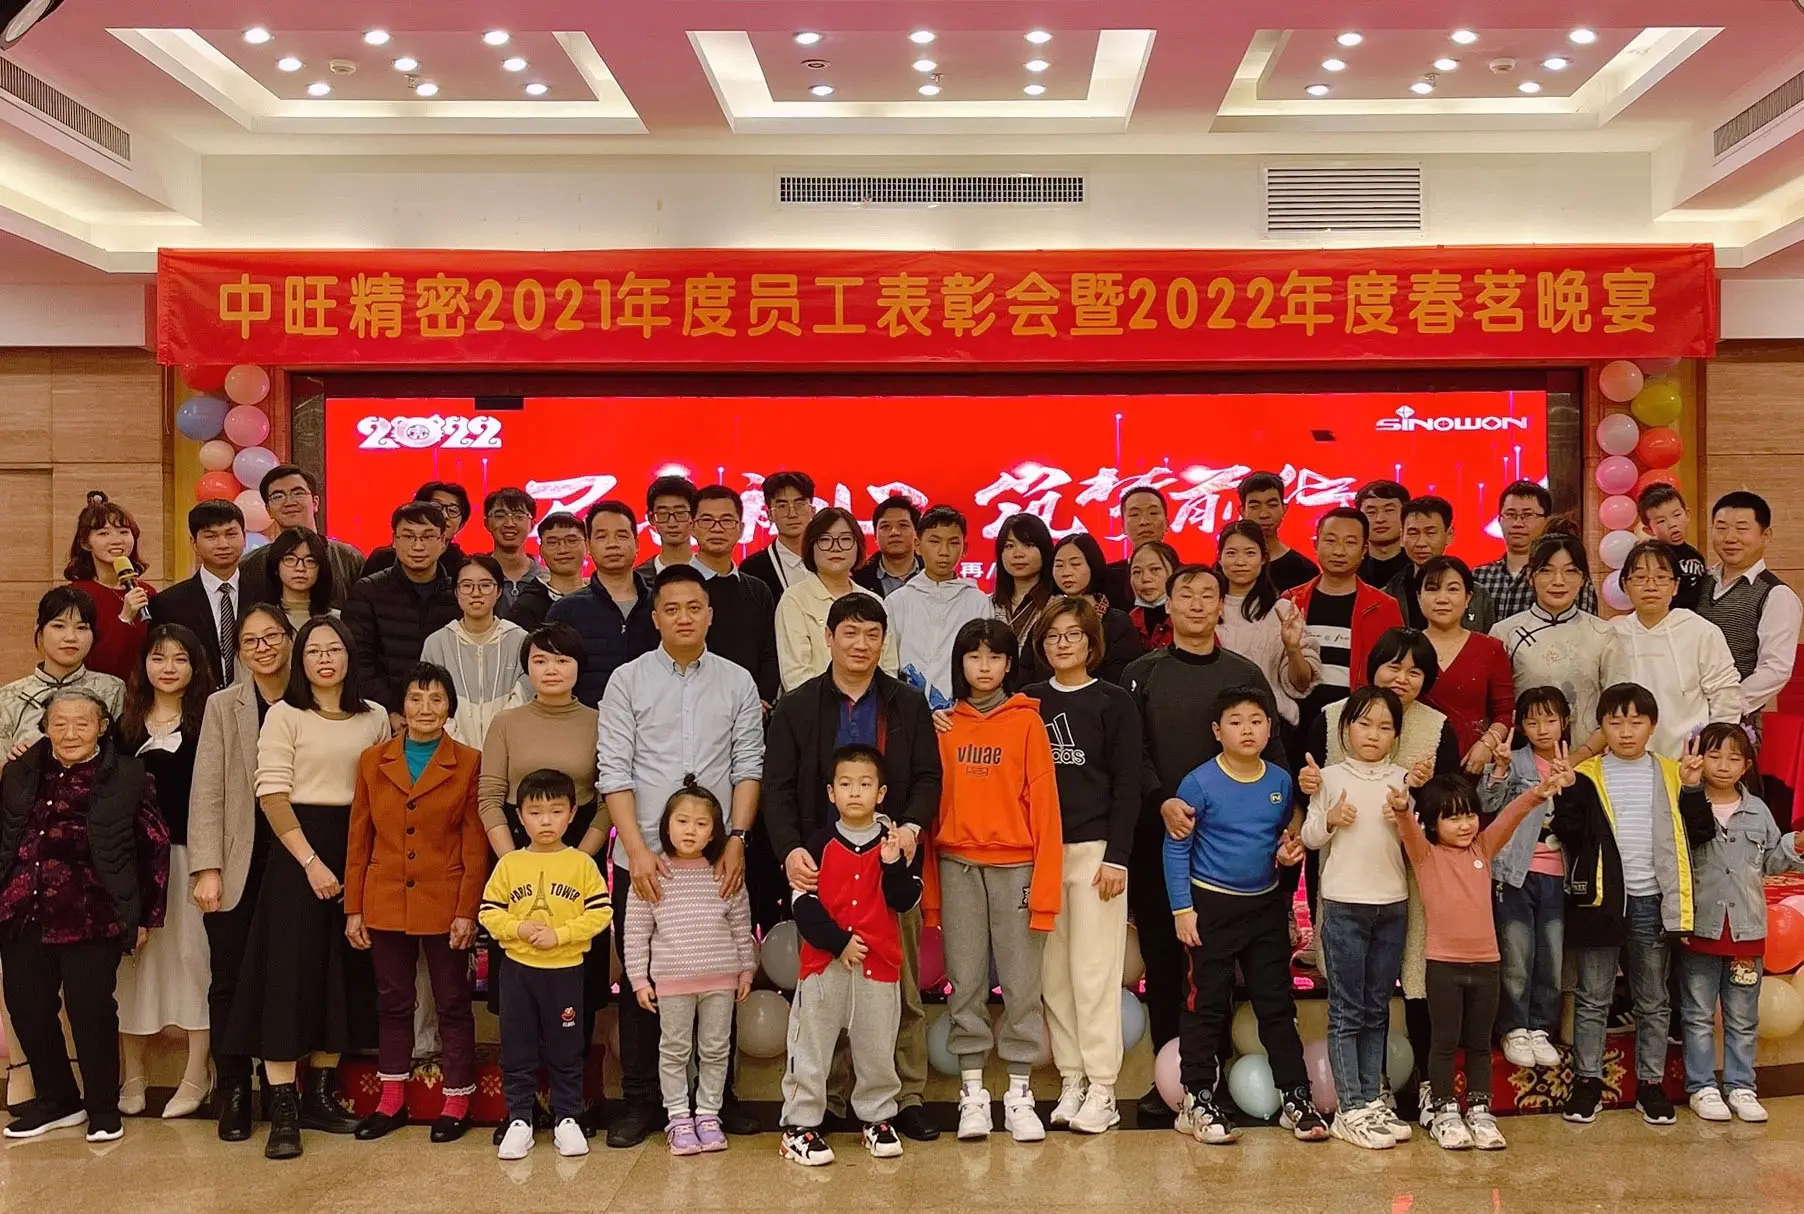 Ceremonia de reconocimiento del personal de Xinyuan en 2021 y fiesta de primavera de Xinyuan en 2022